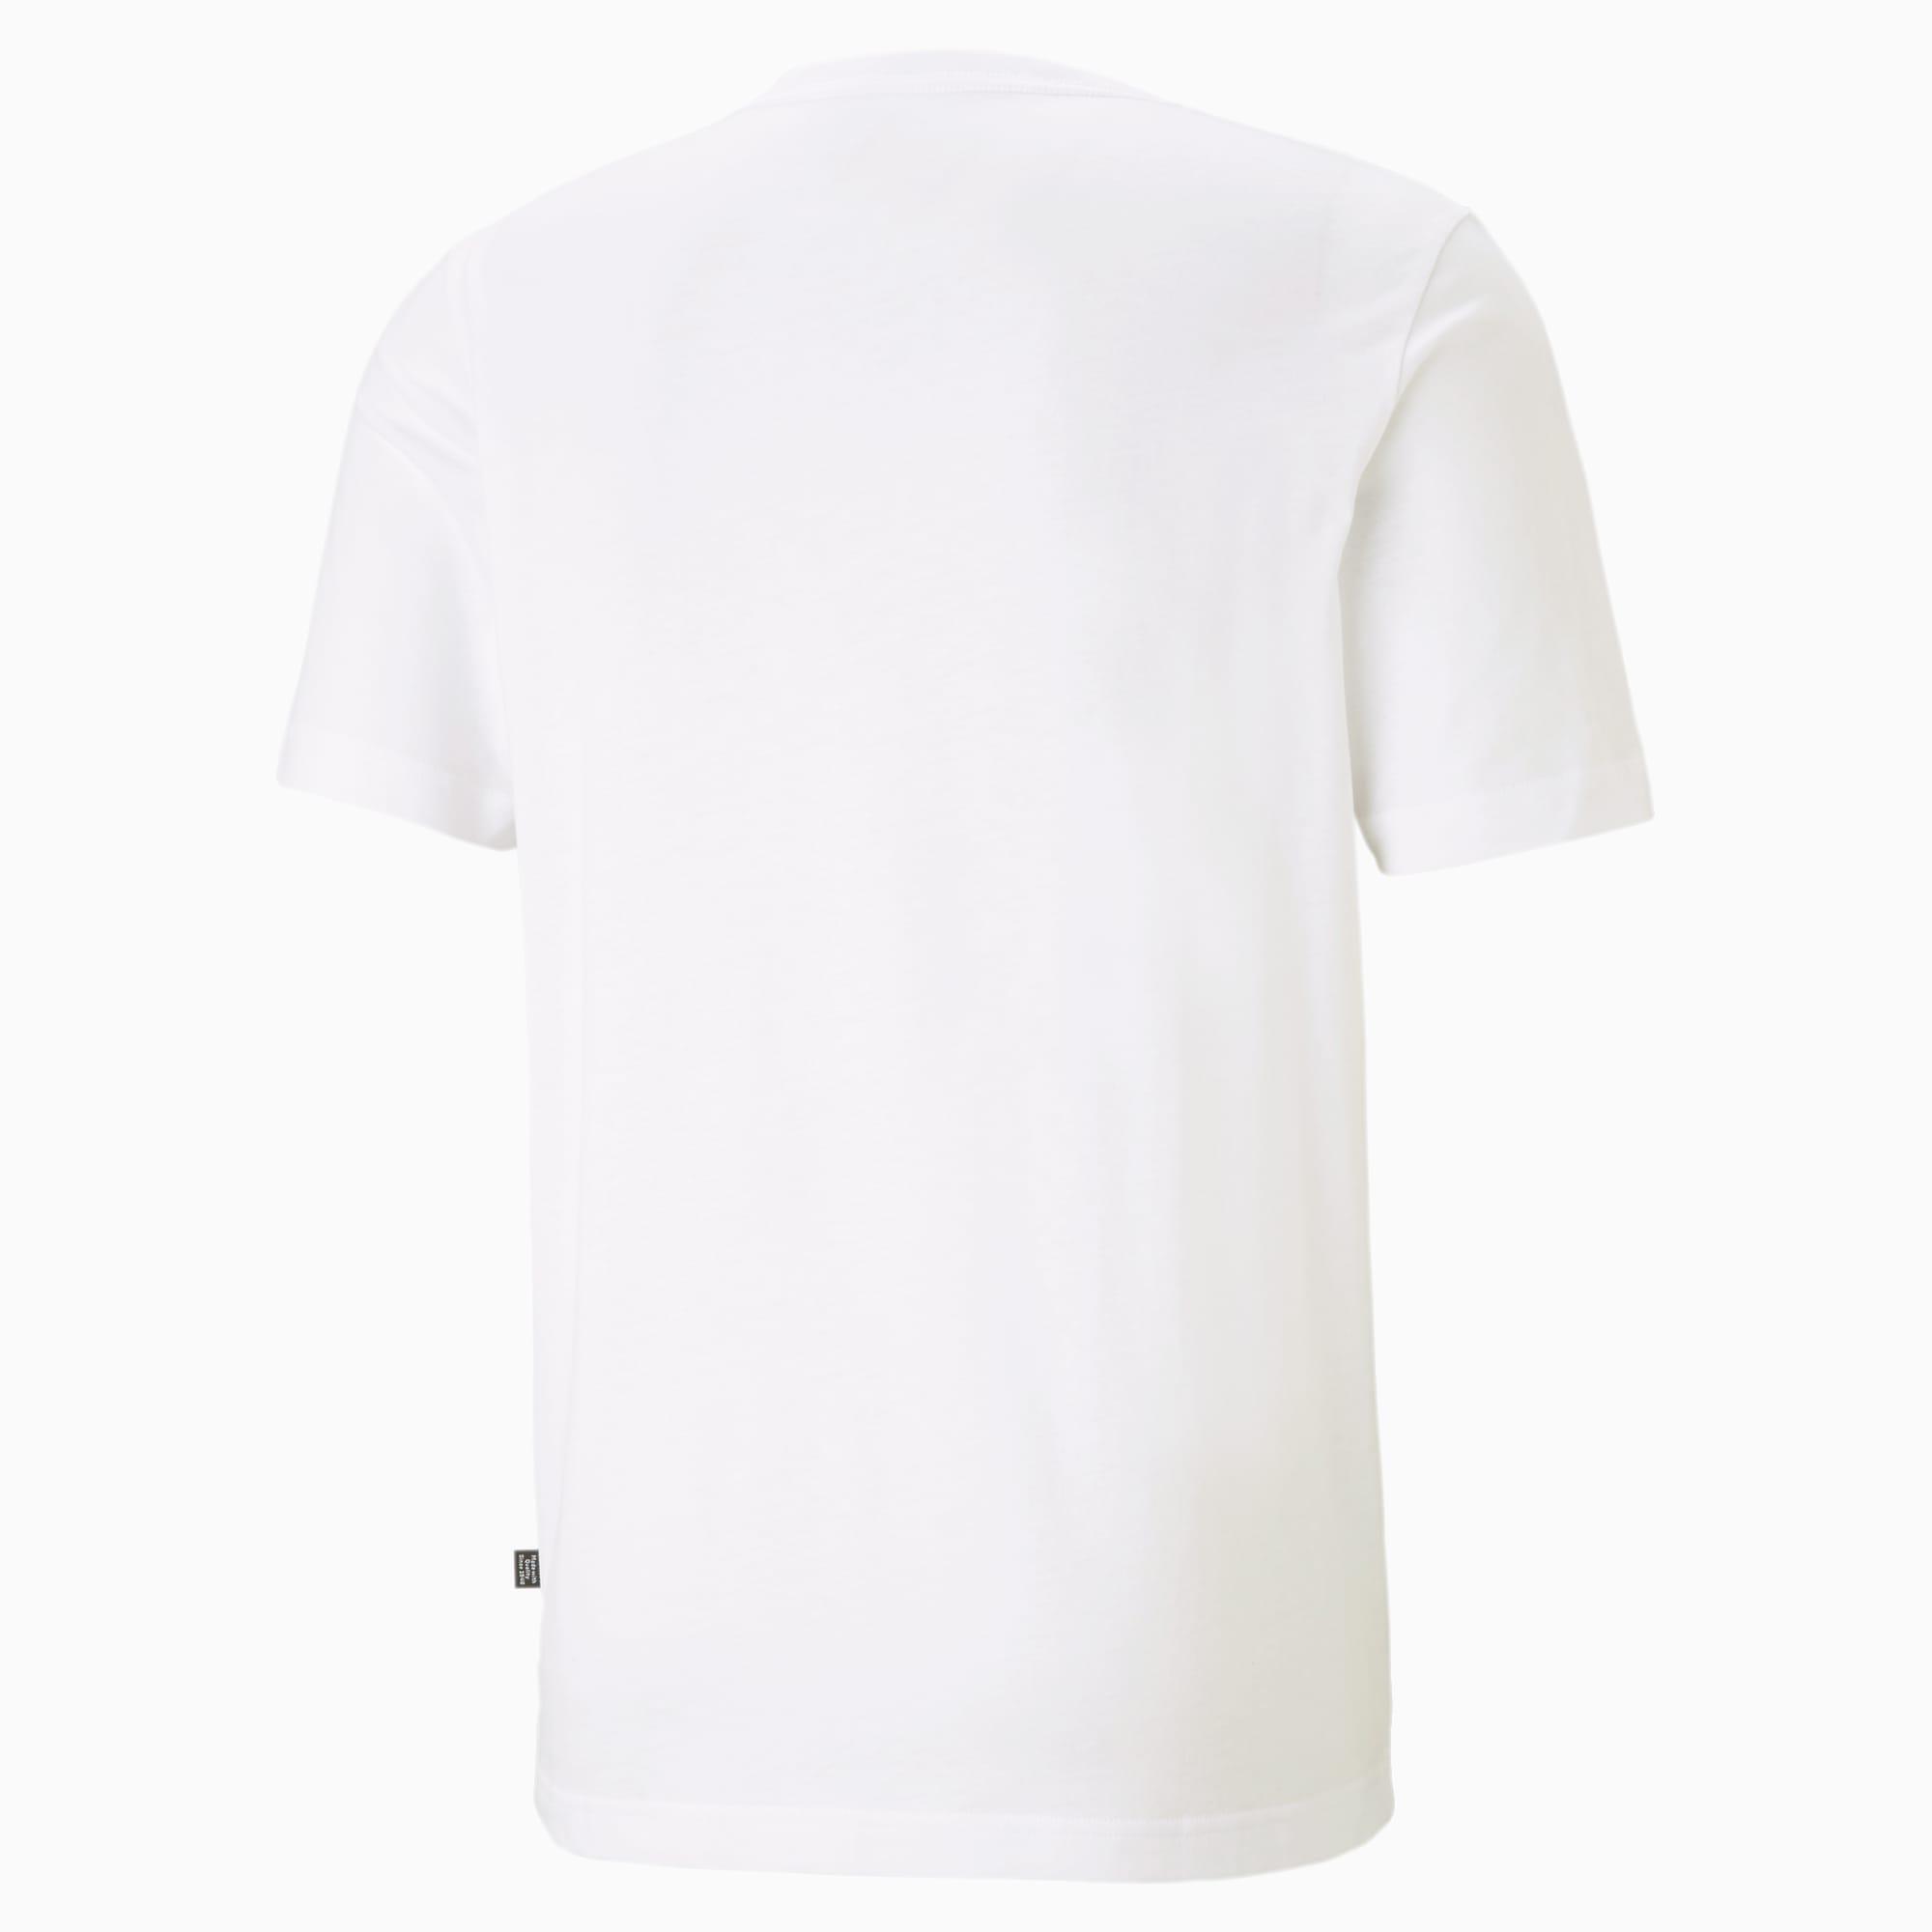 PUMA Essentials V-Neck T-Shirt Men, White, Size XXS, Clothing